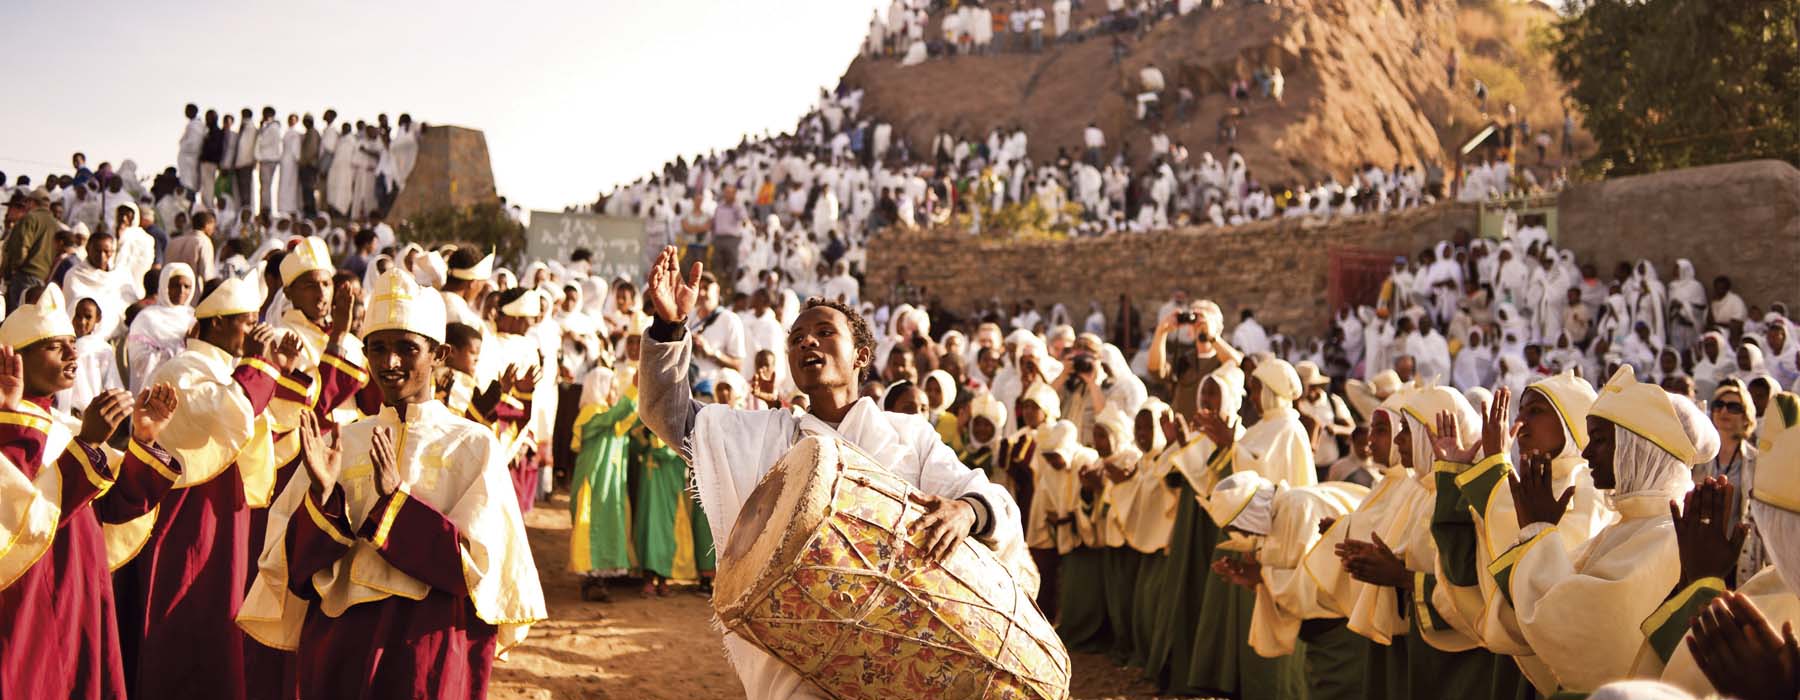 Les grands voyages Ethiopie